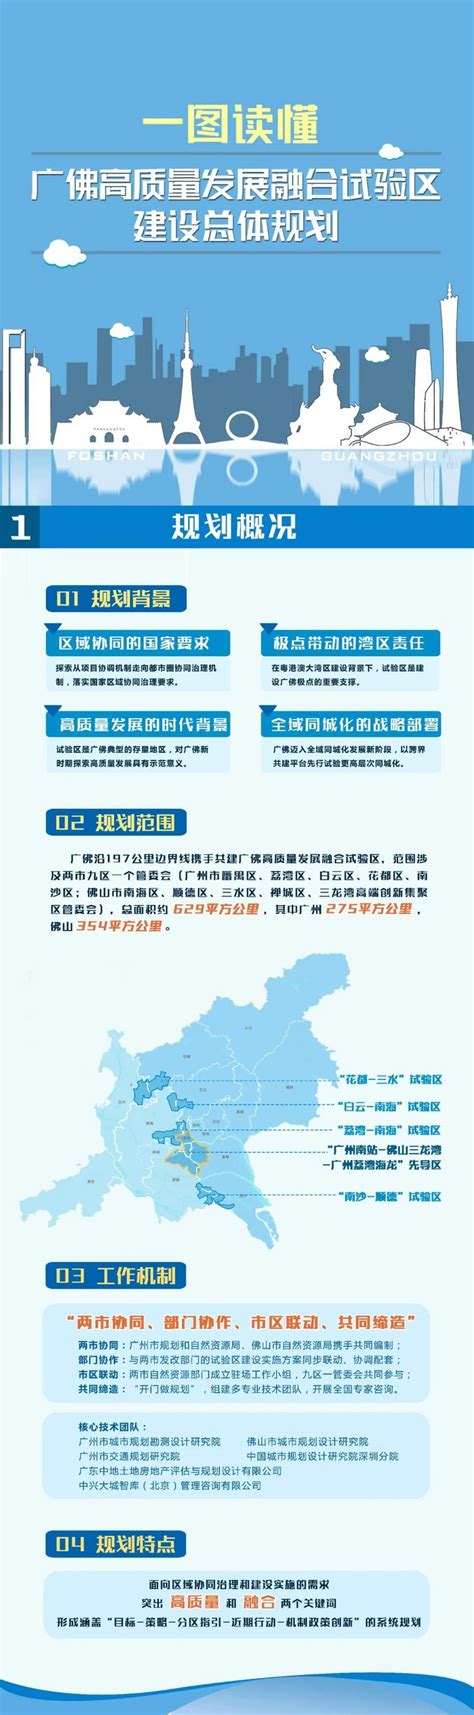 广州和佛山哪个好发展,佛山哪个区离广州近